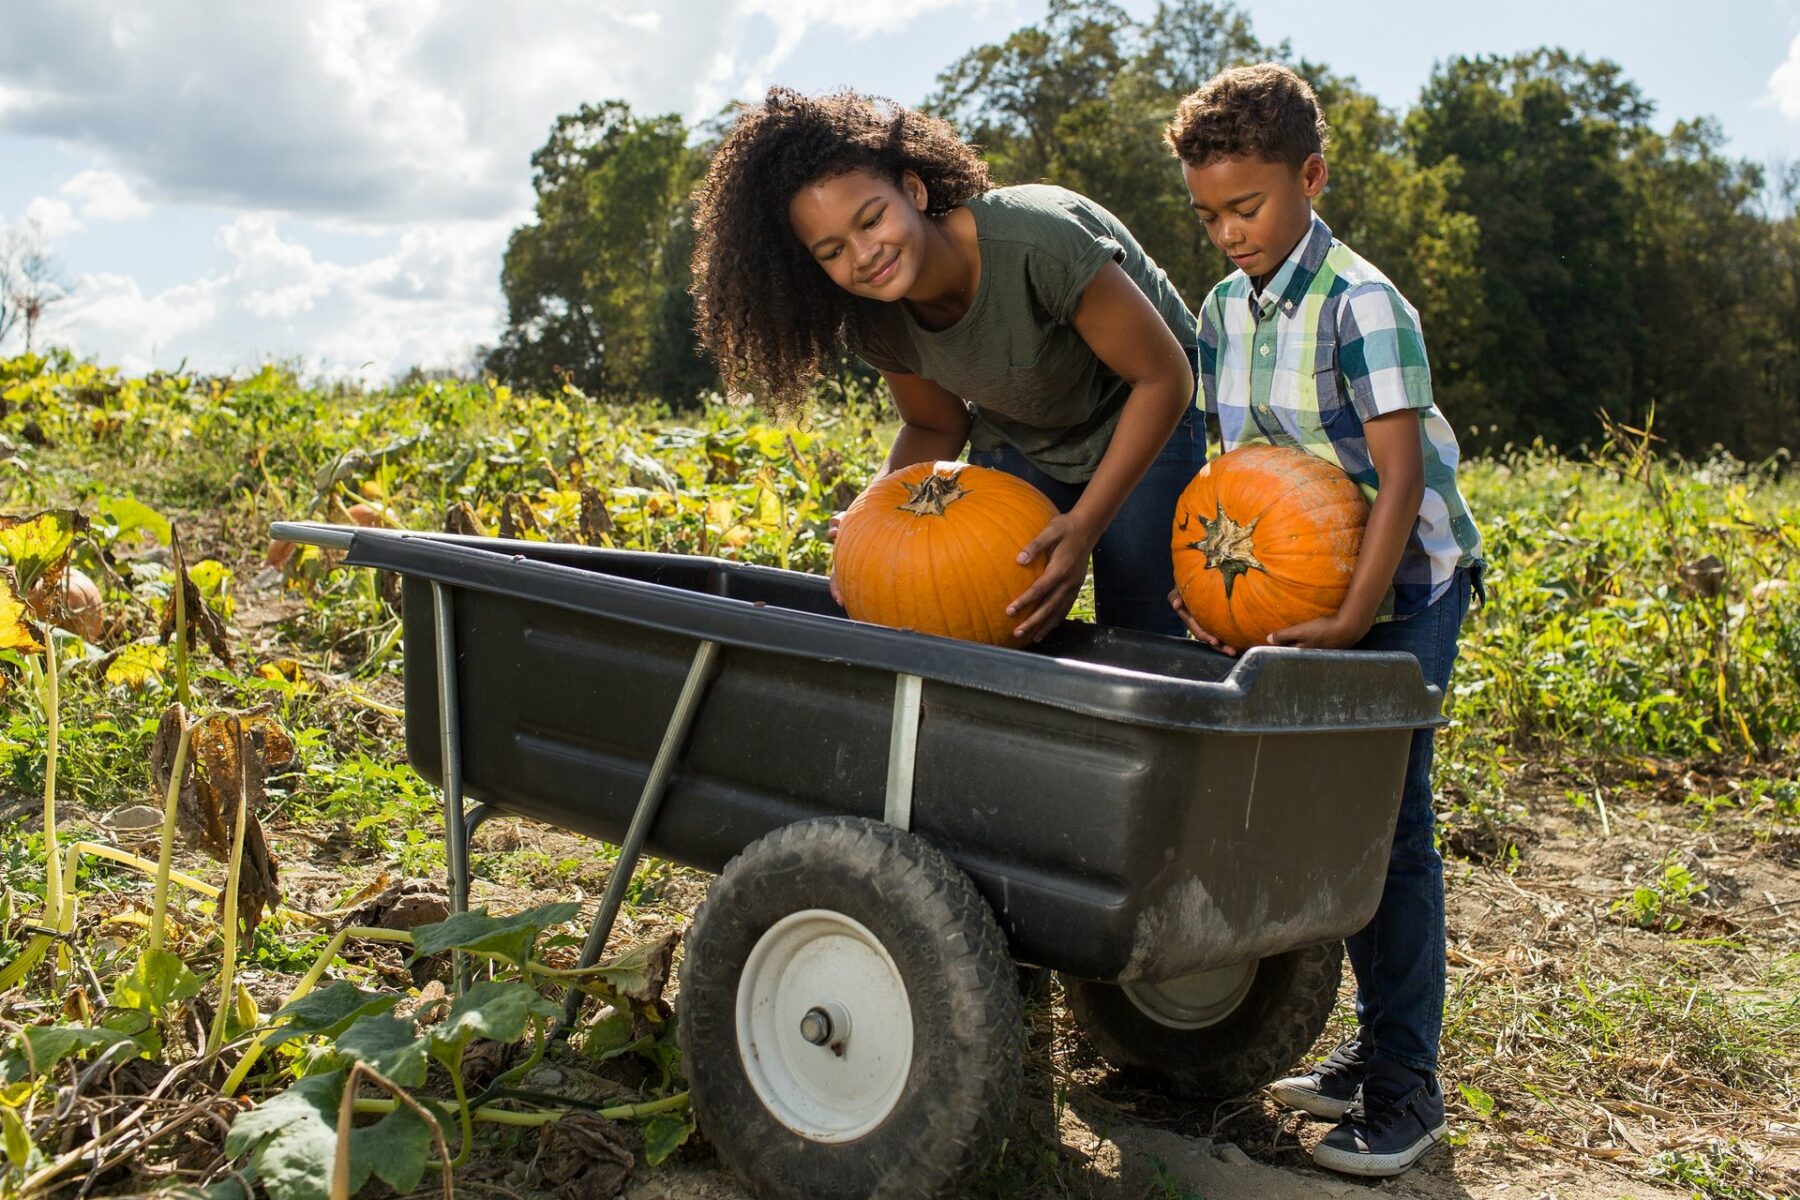 Kids Pumpkin Picking in a Field